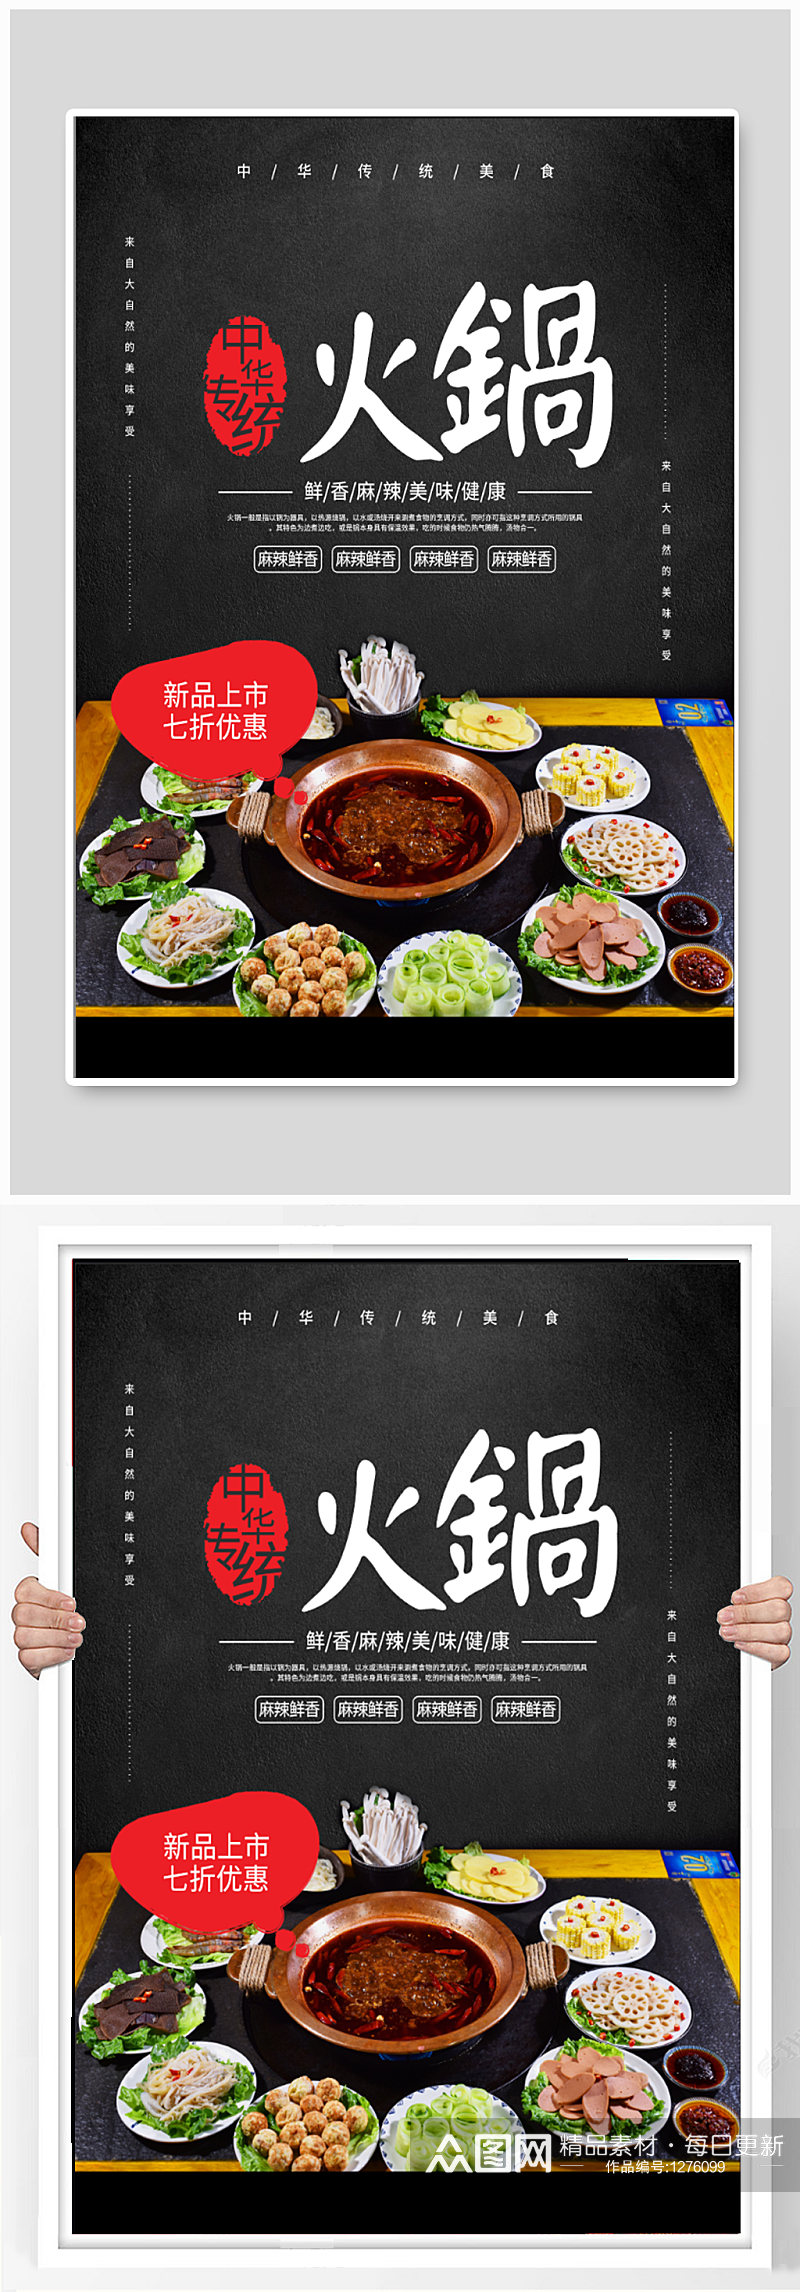 火锅店美食宣传海报素材